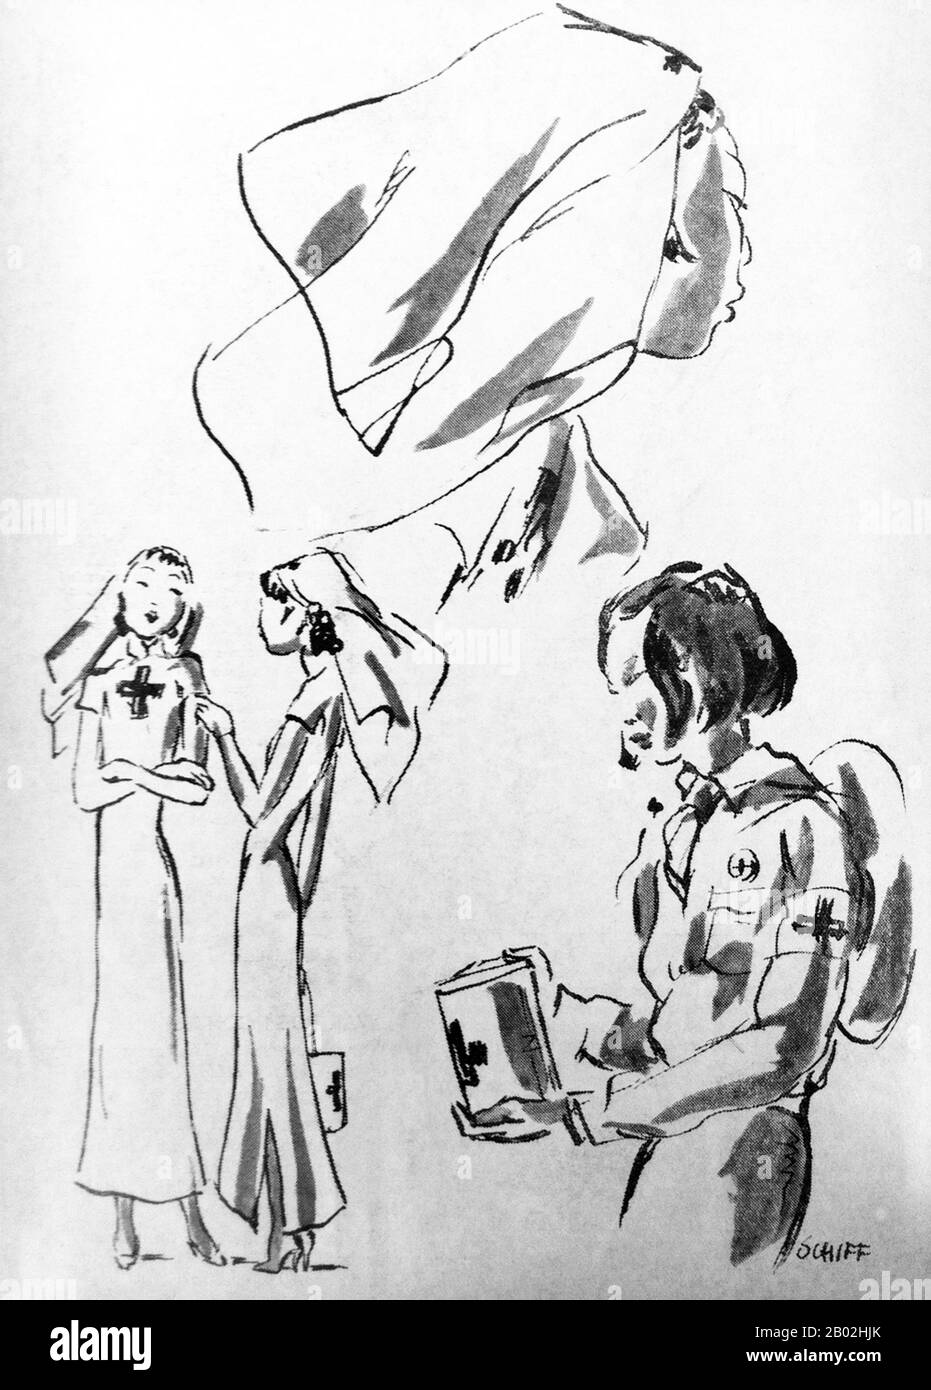 Illustration de l'artiste autrichien Friedrich Schiff, qui a vécu à Shanghai dans les années 1930 et 1940. Ses images illustrent en général l'atmosphère et l'indulgence de « quoi que ce soit » au milieu de la pauvreté qui a caractérisé le vieux Shanghai et qui sera bientôt mis fin à une brusque fin par l'invasion japonaise (1937) et la révolution communiste (1949). Ici, cependant, il tourne la main vers un sujet tout à fait plus austère et douloureux, le sort des Chinois chassés de leurs maisons par l'agression japonaise en 1937. Banque D'Images